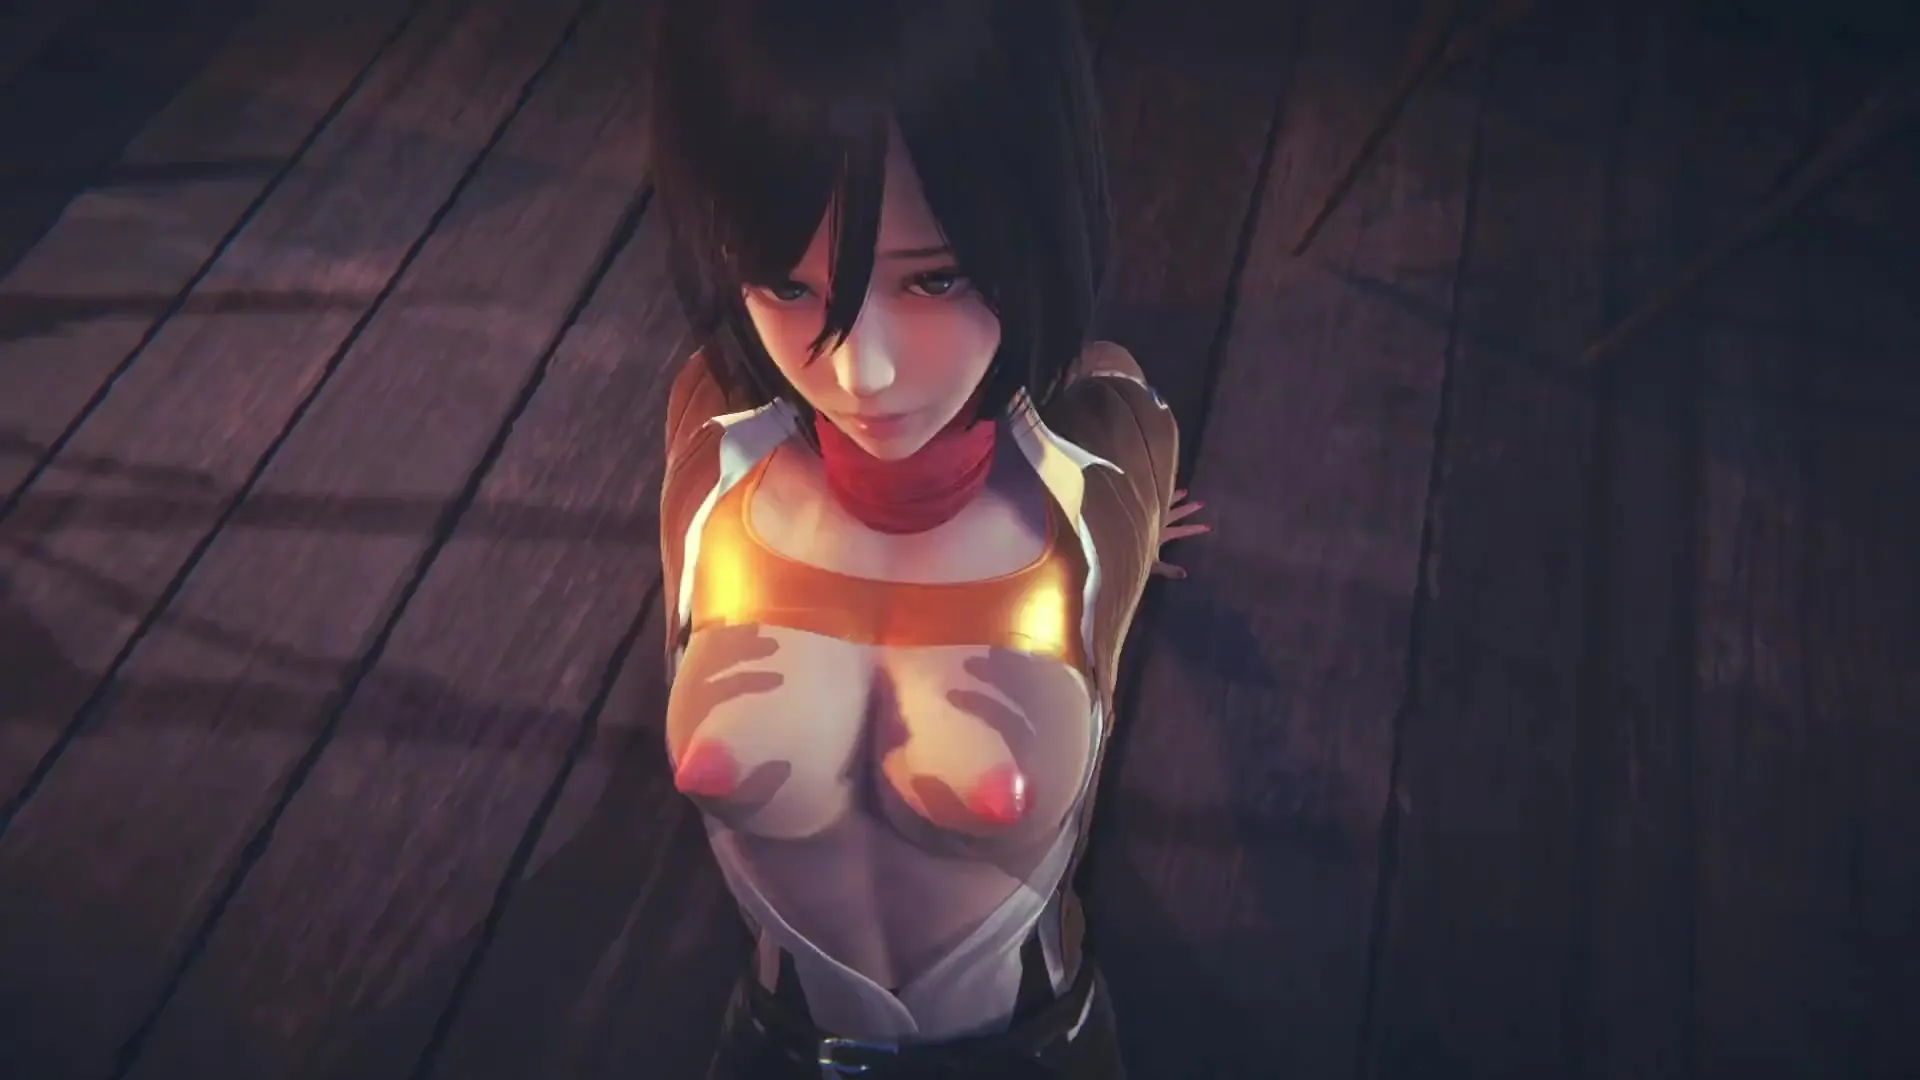 Attack On Titan Tits Hentai - Attack on Titan] Busty teen Mikasa fucks hard in POV cartoon scene